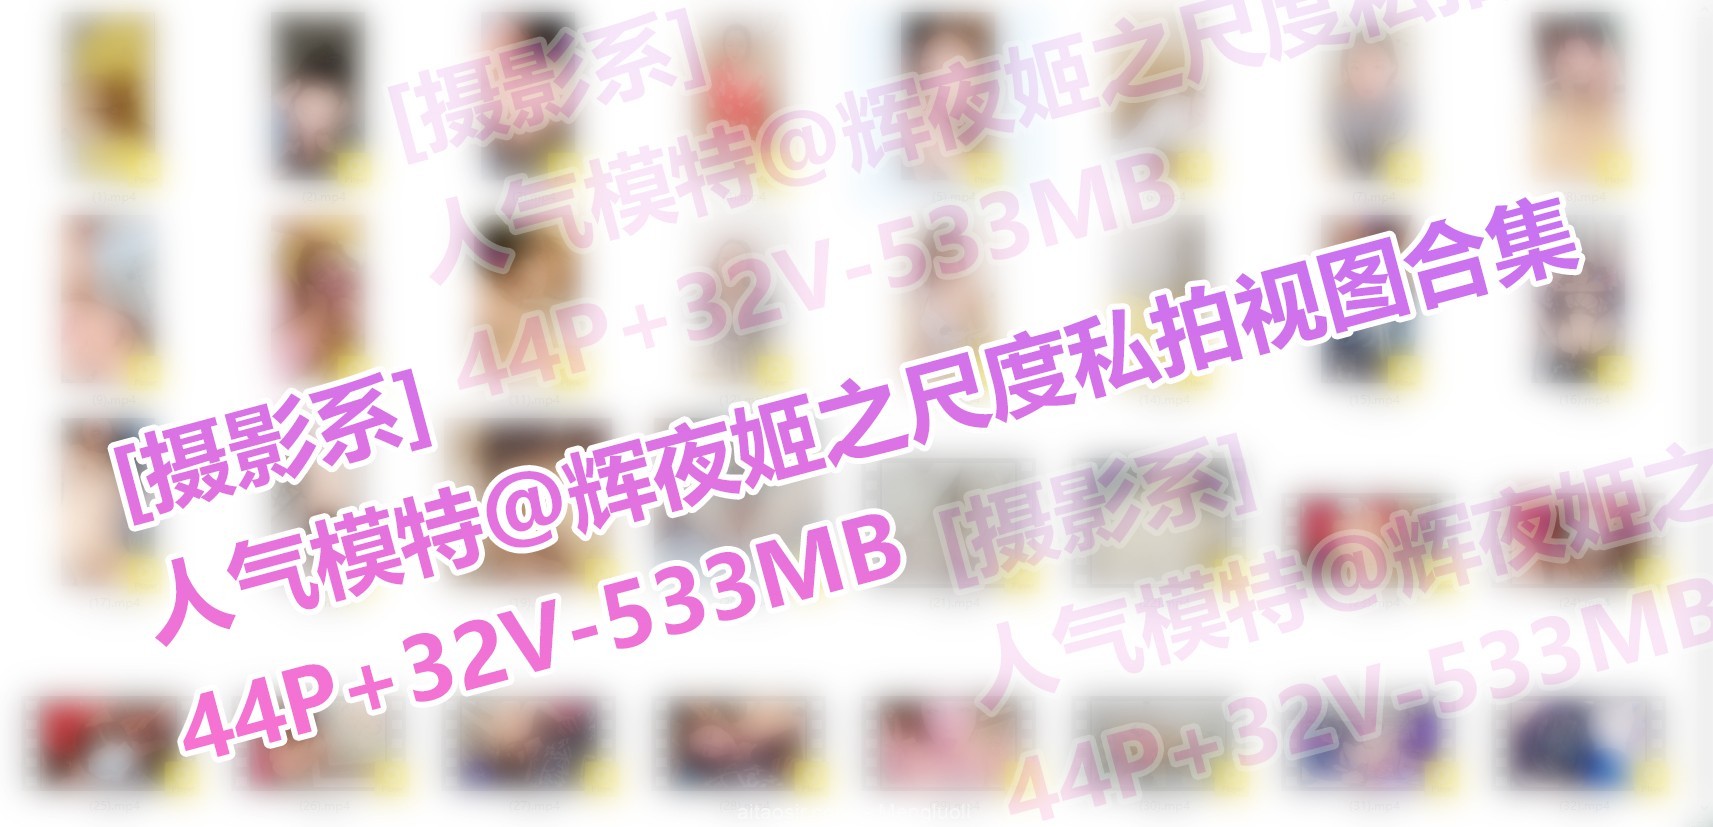 [会员][视图][摄影系]人气模特@辉夜姬之尺度私拍视图合集（44P/32V/533MB）插图15